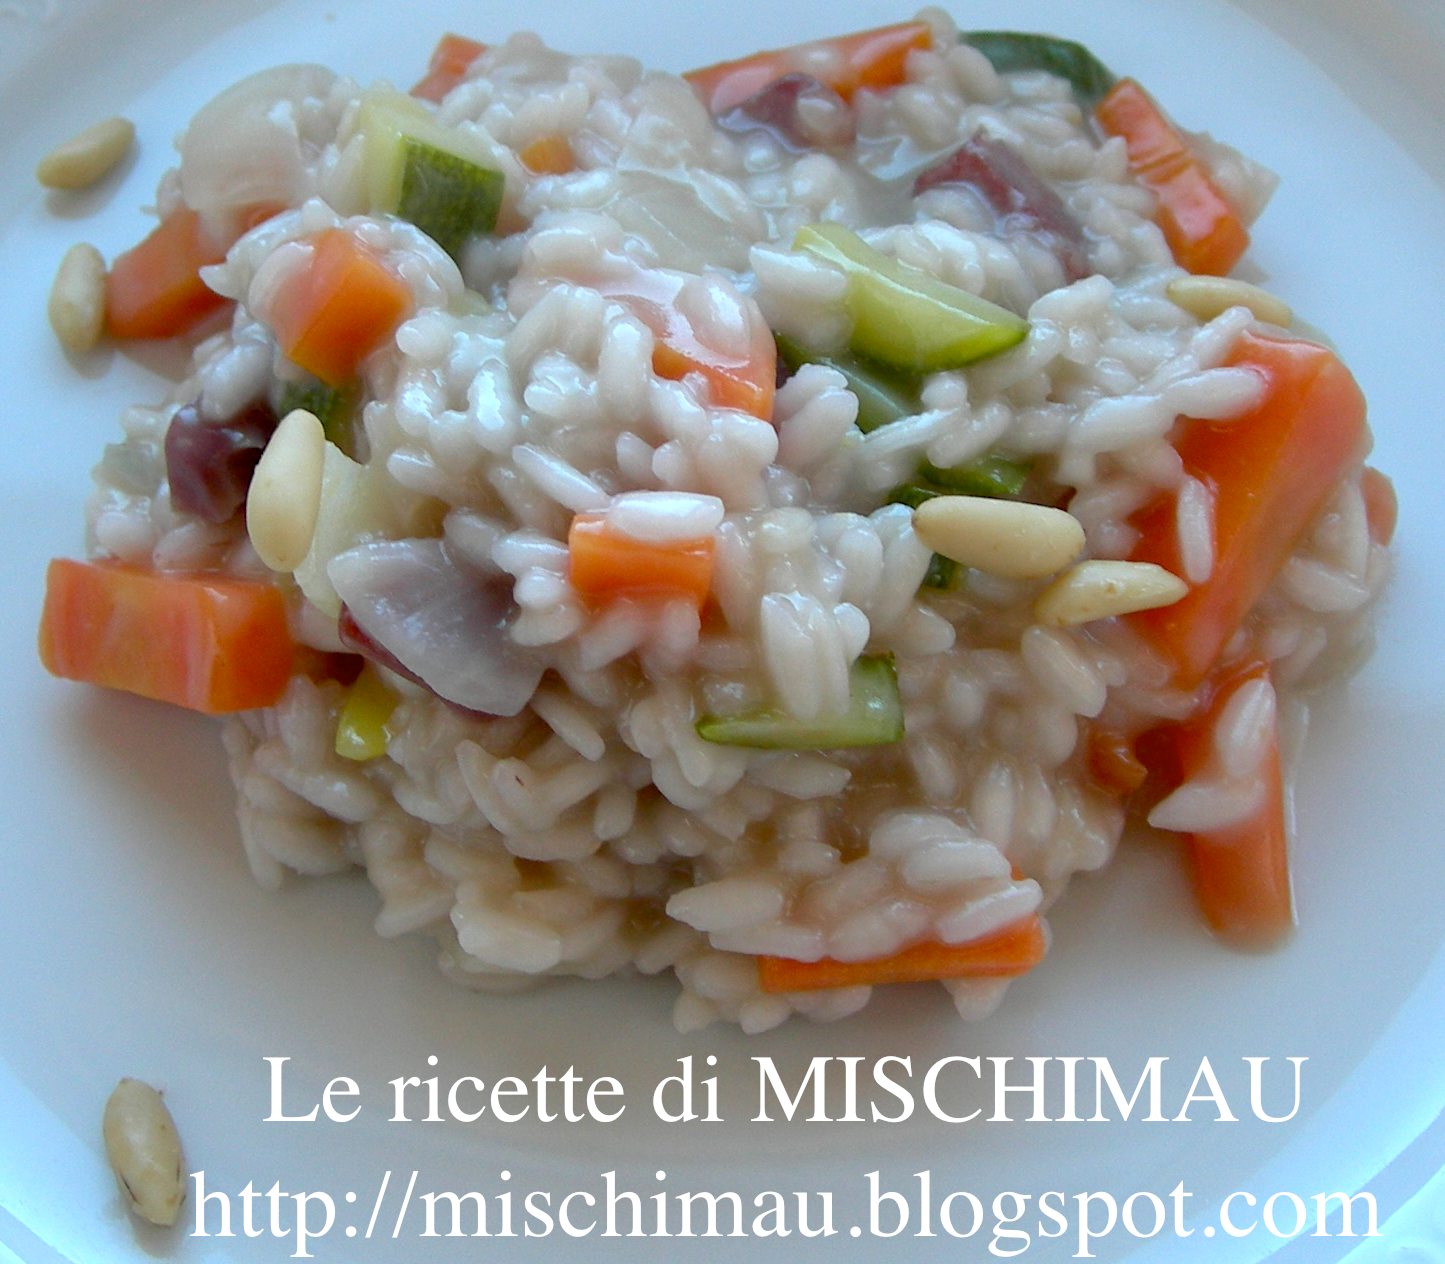 Le ricette di MISCHIMAU: Risotto alle verdure croccanti